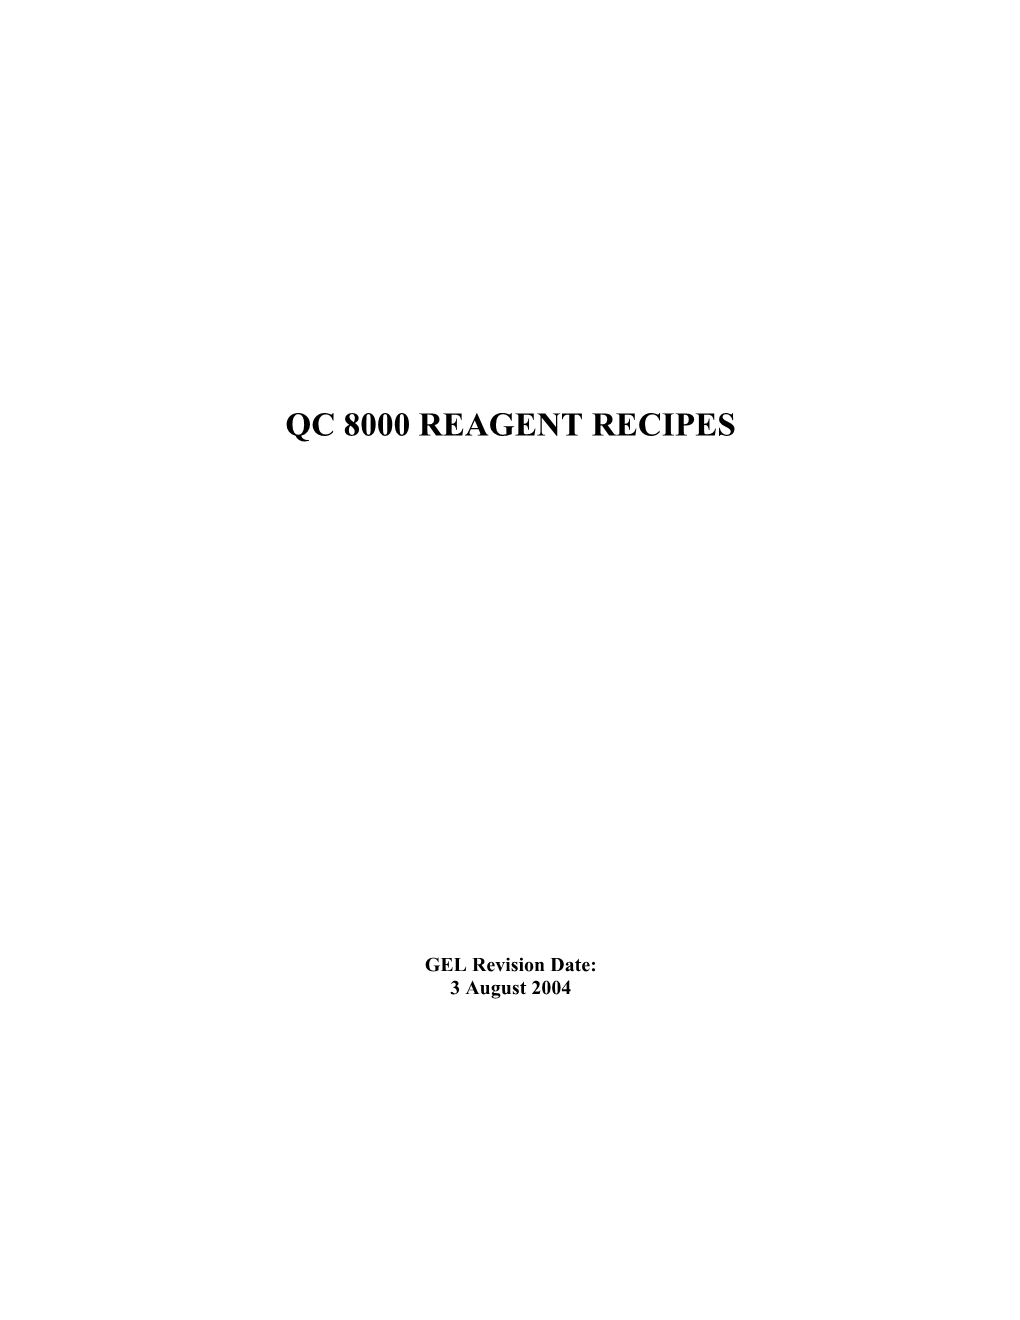 Qc 8000 Reagent Recipes